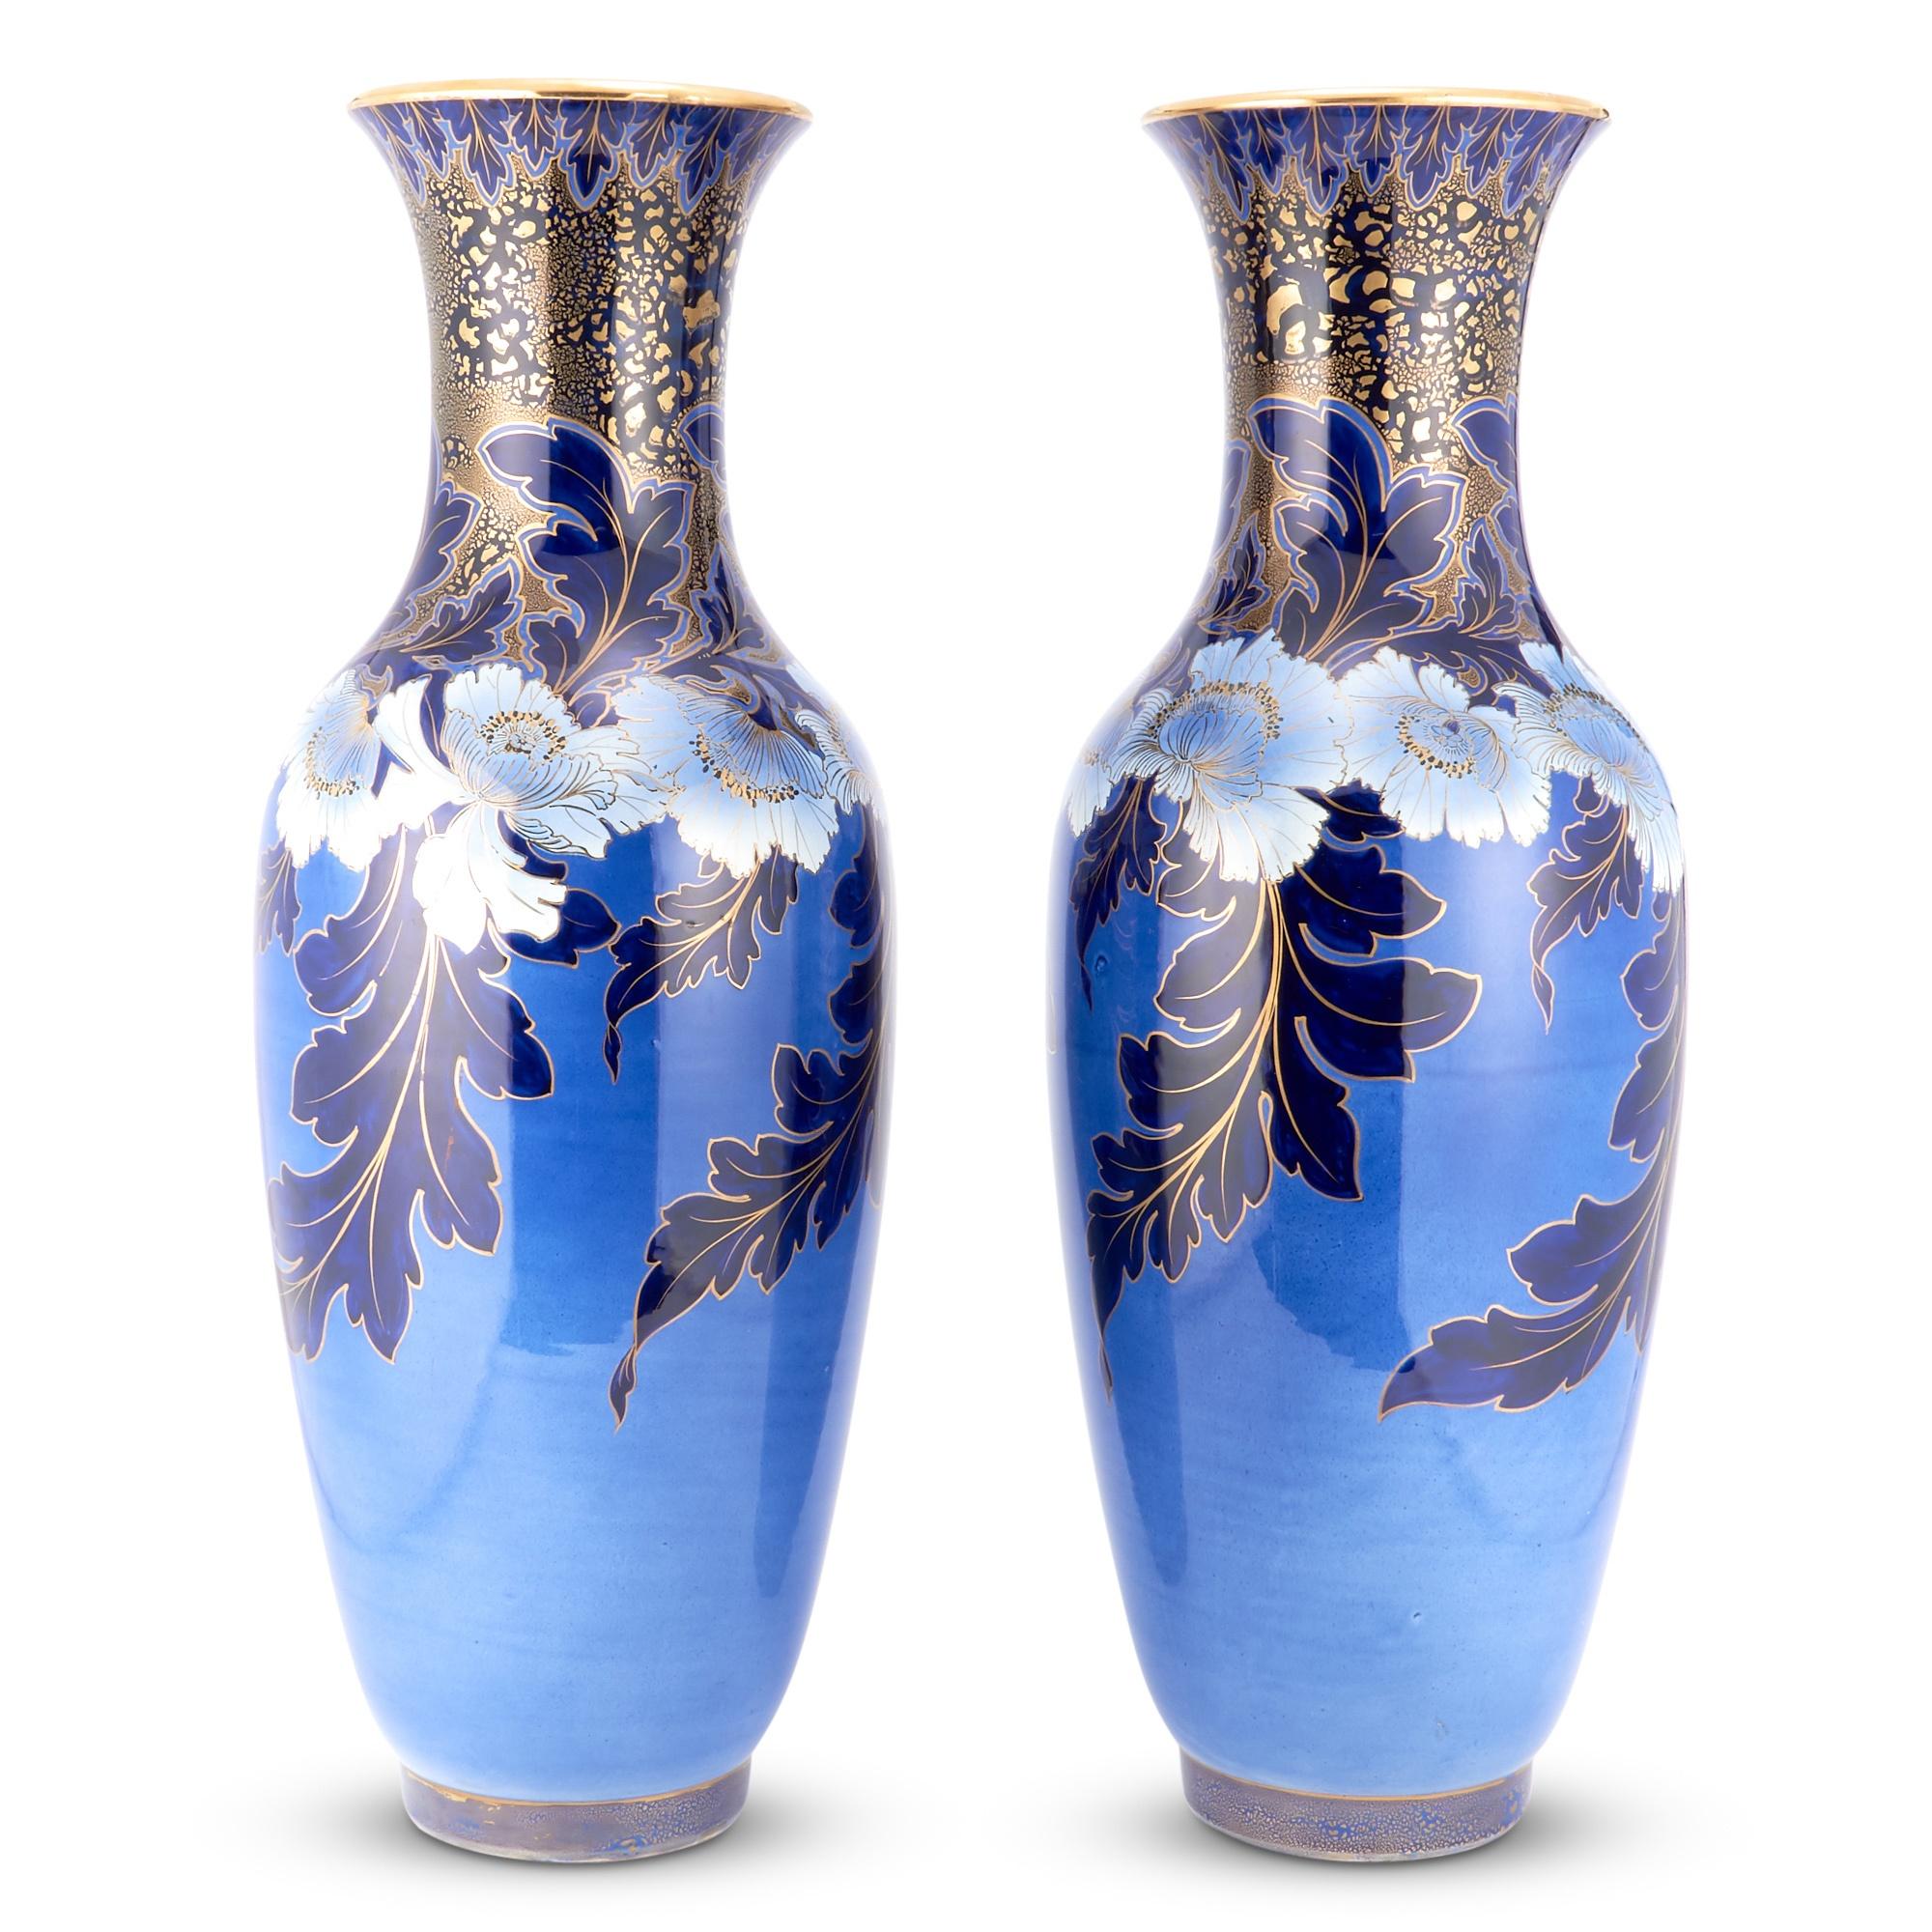 Tauchen Sie ein in die Opulenz des frühen 19. Jahrhunderts mit diesem außergewöhnlichen Paar handbemalter und vergoldeter Vasen, die ein echtes Zeugnis der Handwerkskunst dieser Epoche sind. Jede Vase ist ein Meisterwerk für sich, mit einem großen,